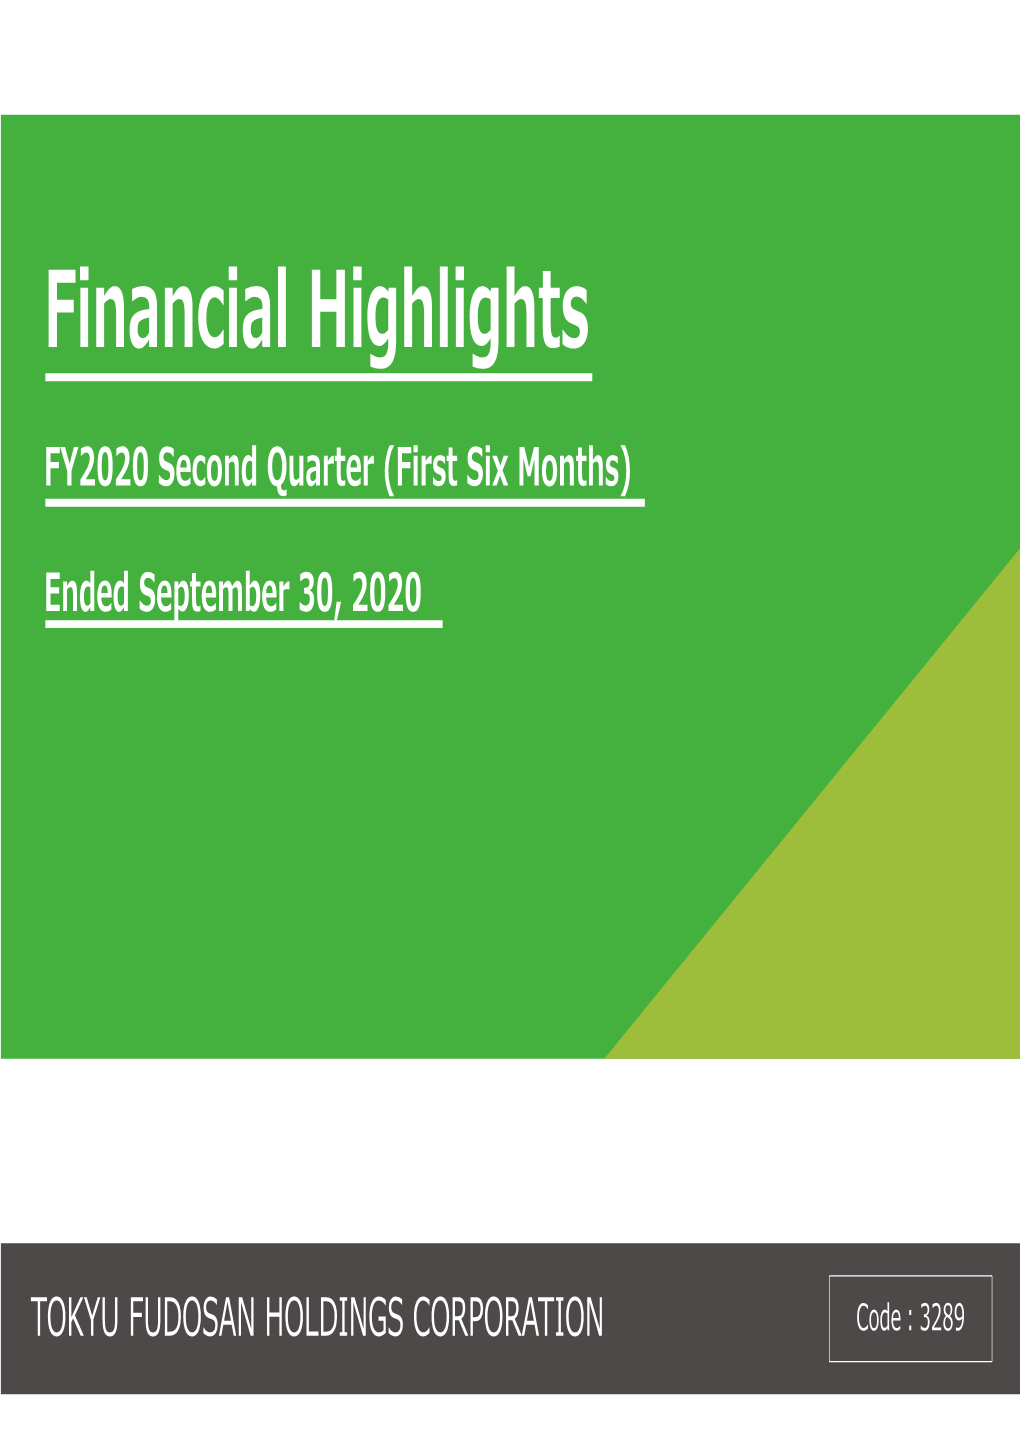 Financial Highlights FY2020 Second Quarter (First Six Months)